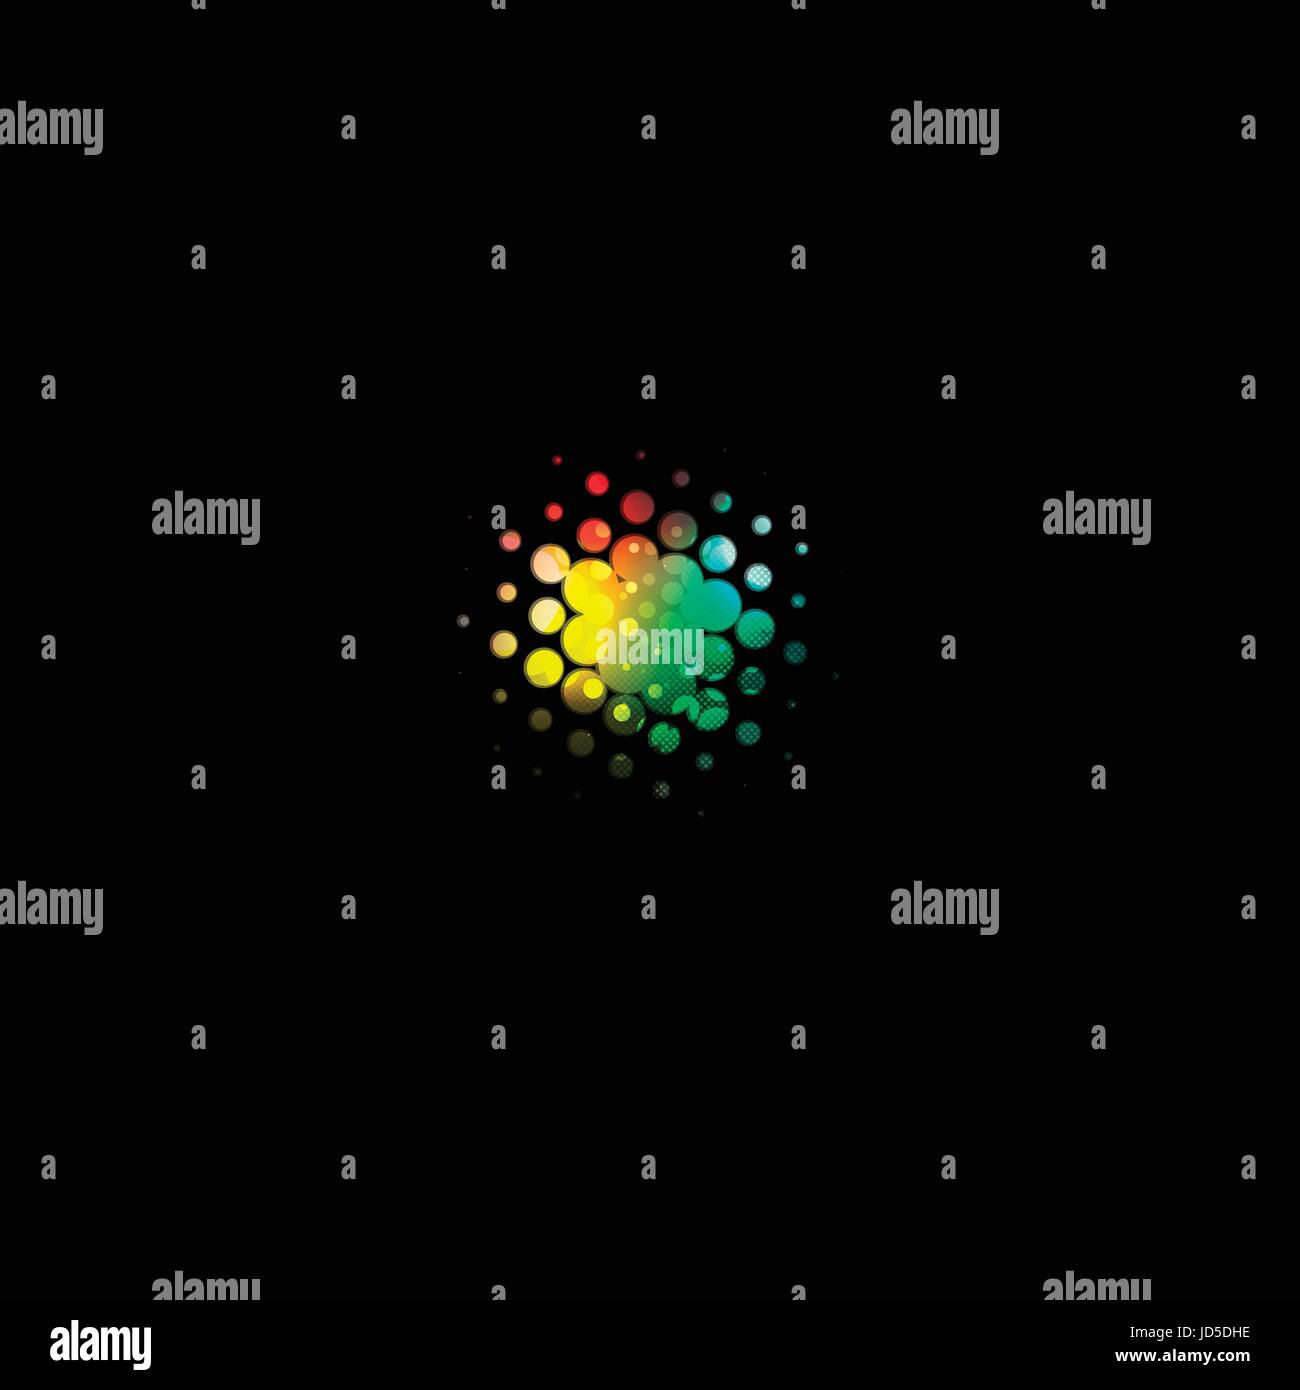 Isolierte abstrakte bunte Bläschen Logo, Technologie-Schriftzug auf schwarzem Hintergrund-Vektor-Illustration. Stock Vektor